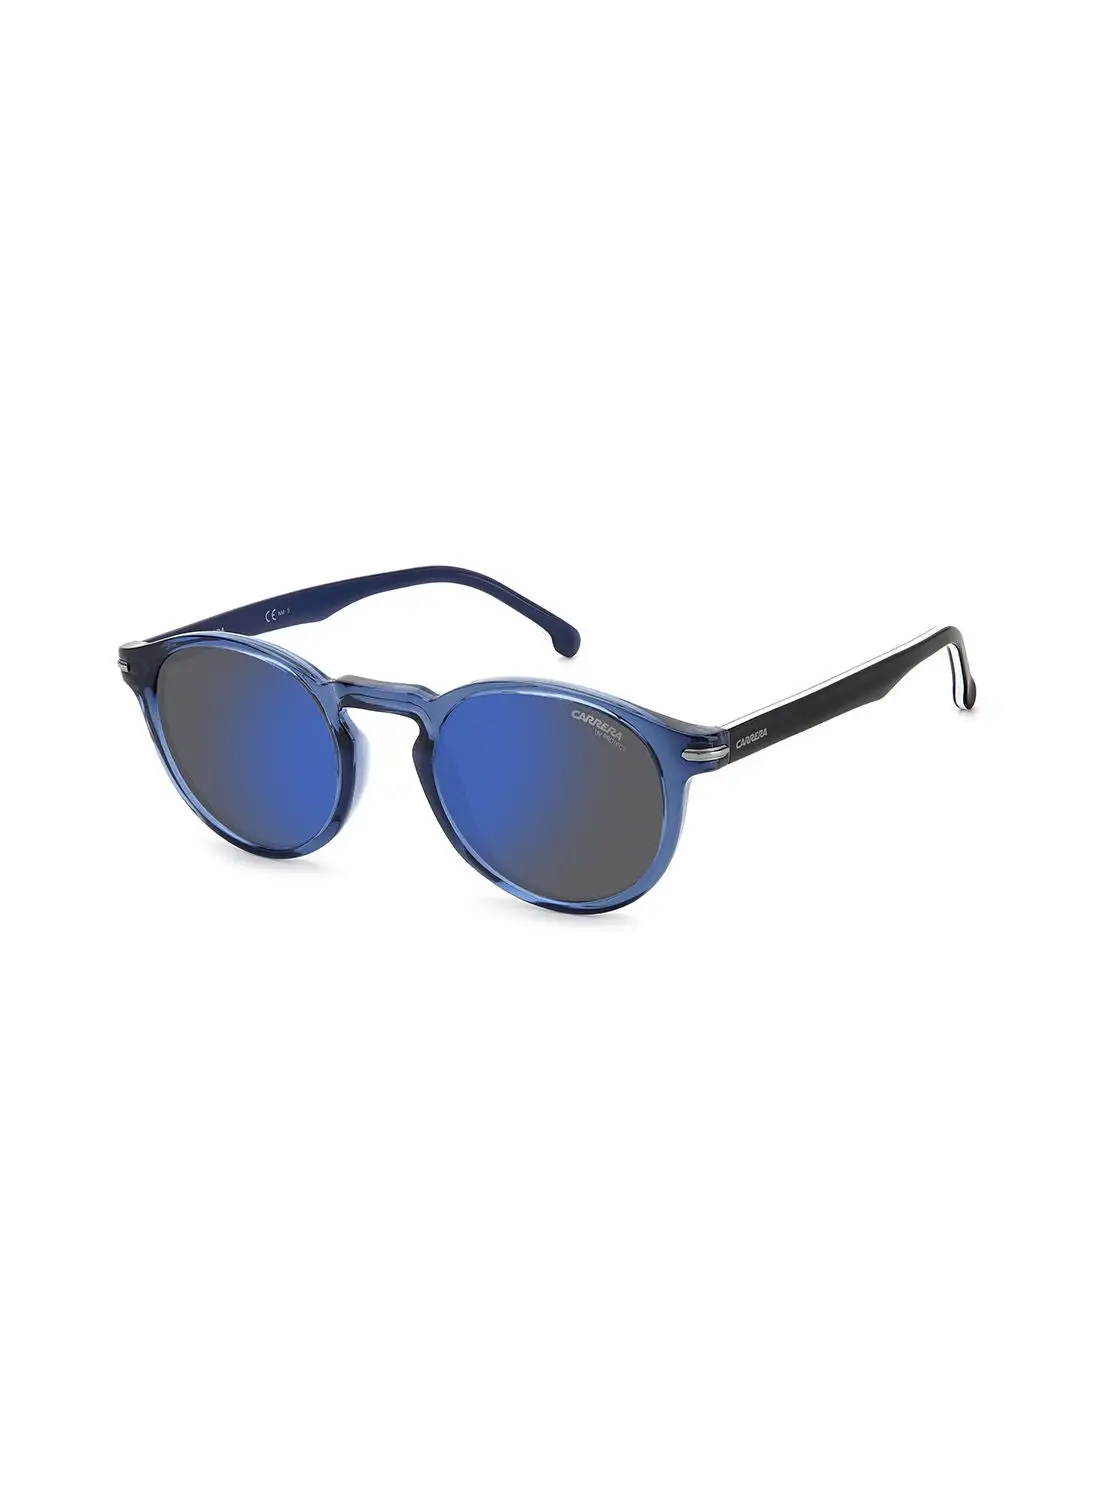 كاريرا نظارة شمسية دائرية للحماية من الأشعة فوق البنفسجية للجنسين - Carrera 301/S Blue 50 - مقاس العدسة: 50 ملم